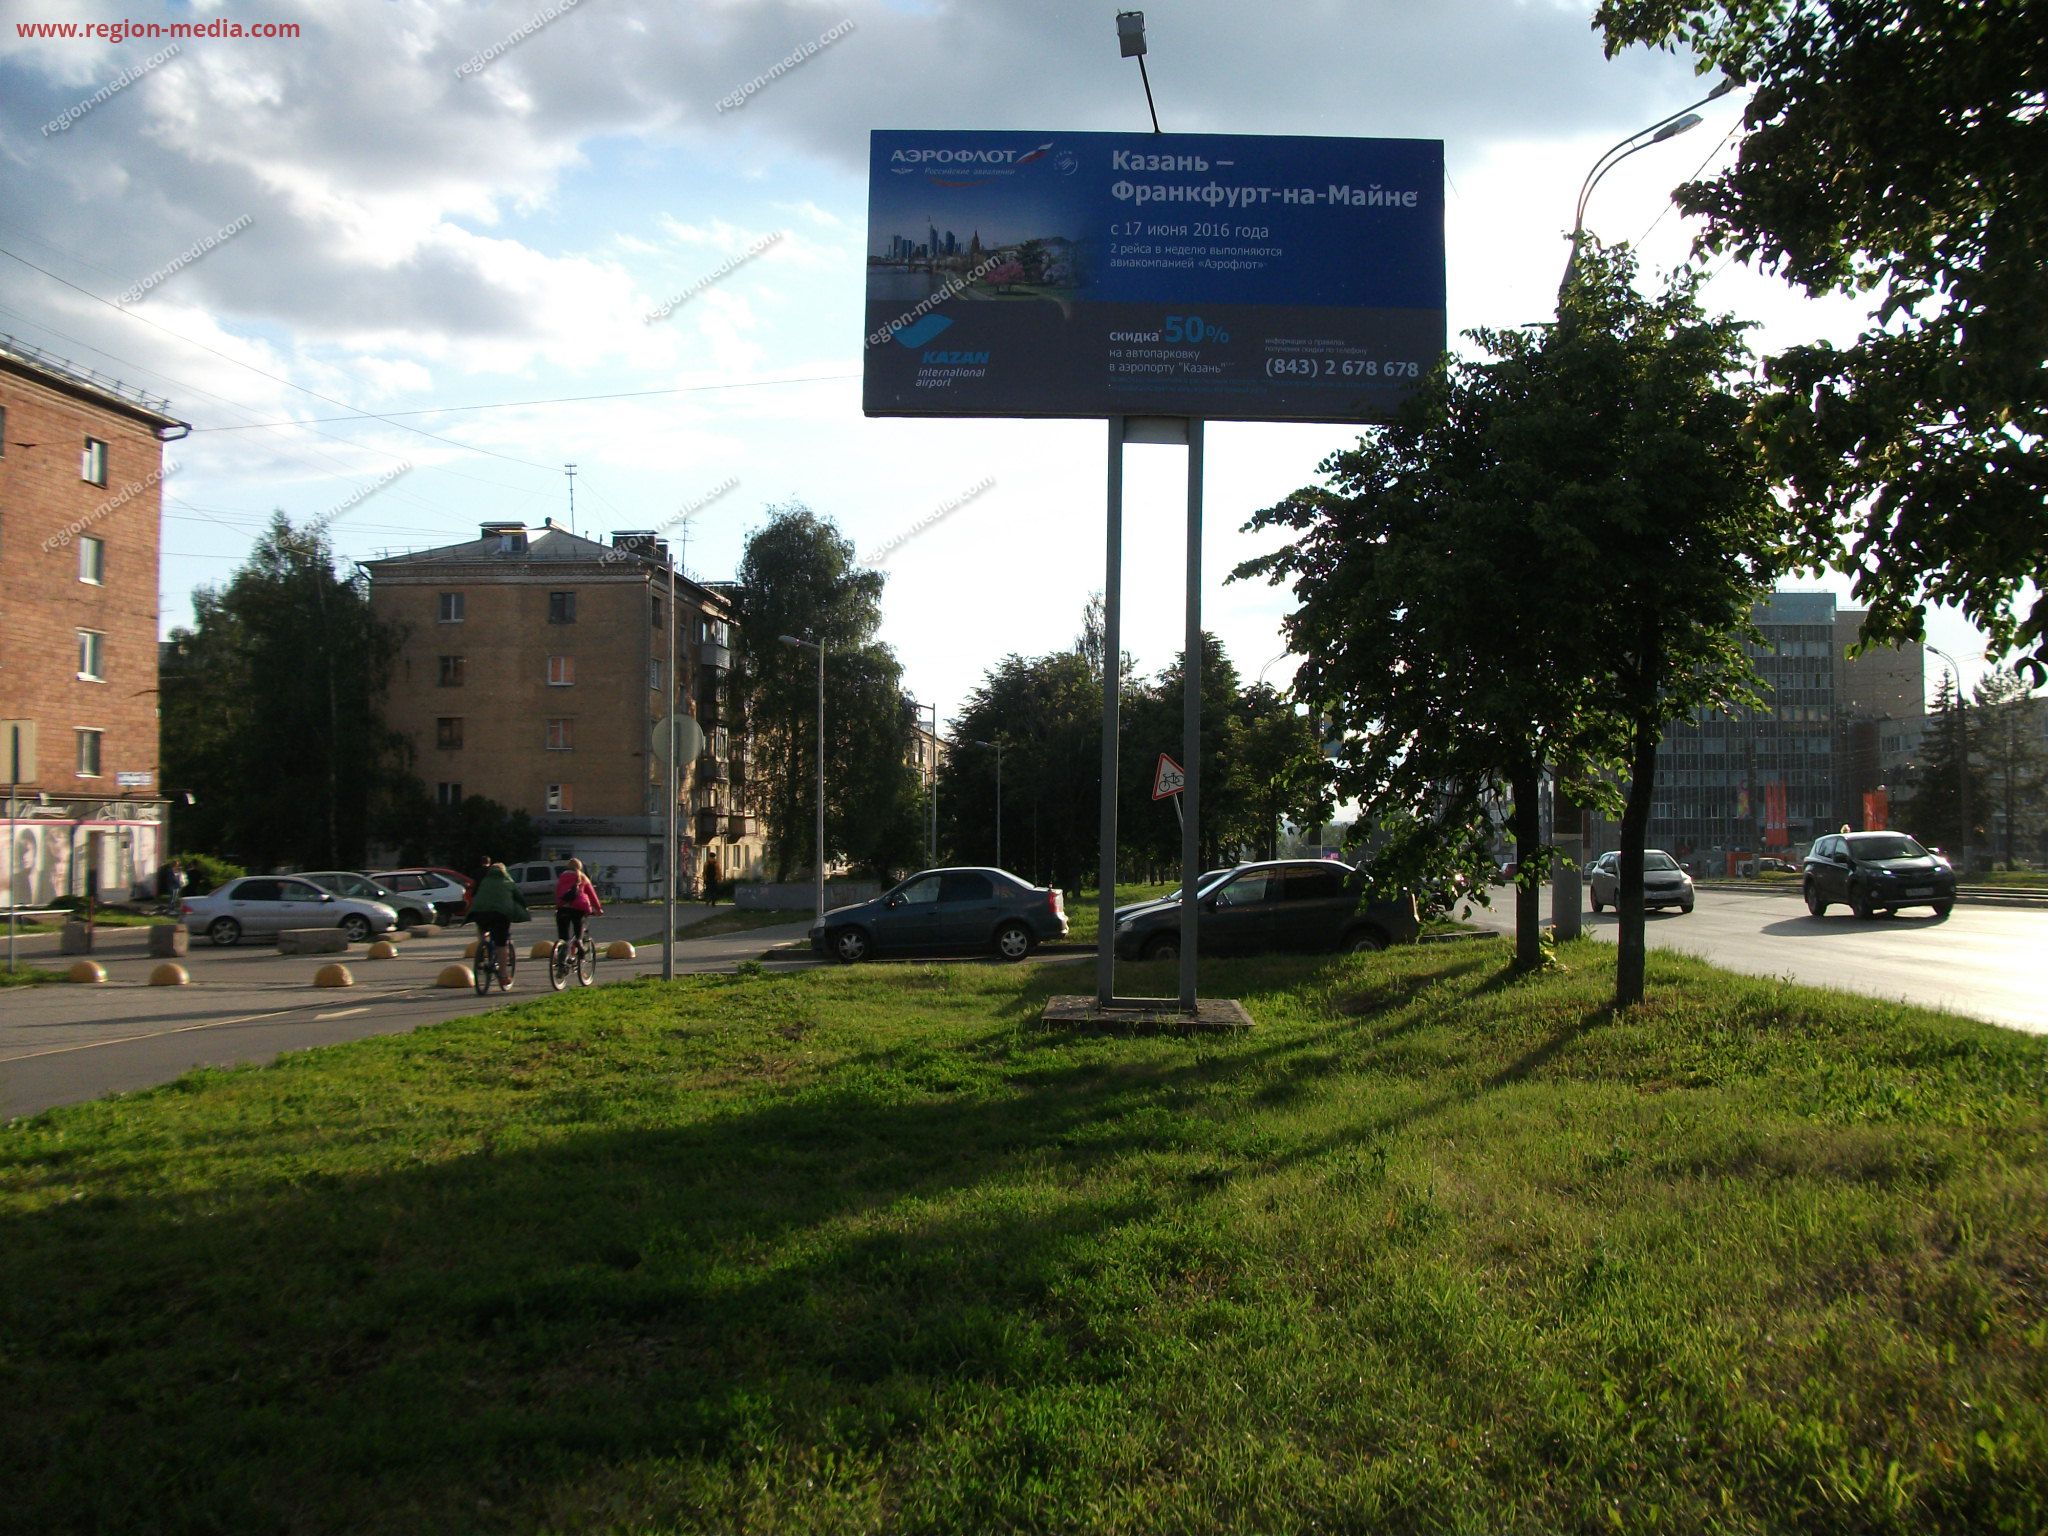 Размещение рекламы компании "Аэрофлот" на щитах 3х6 в городе Ижевск